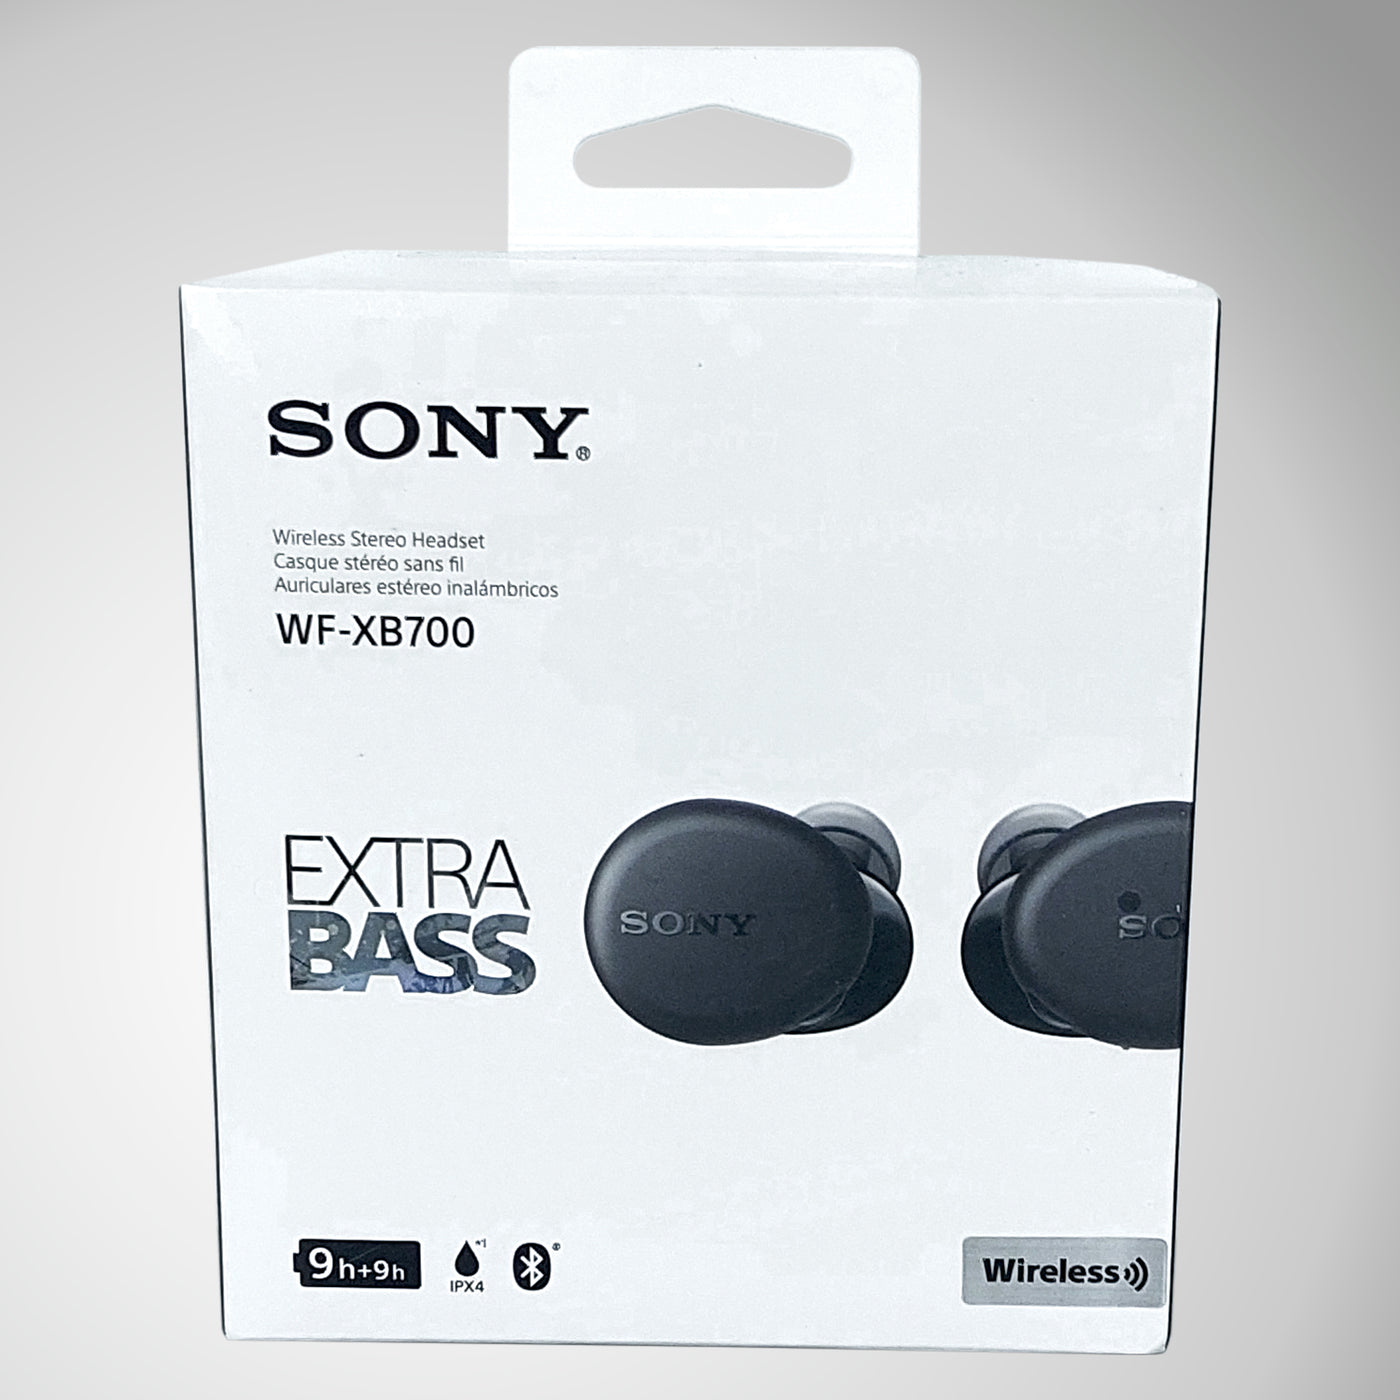 Sony WF-XB700, análisis: review con características, precio y  especificaciones